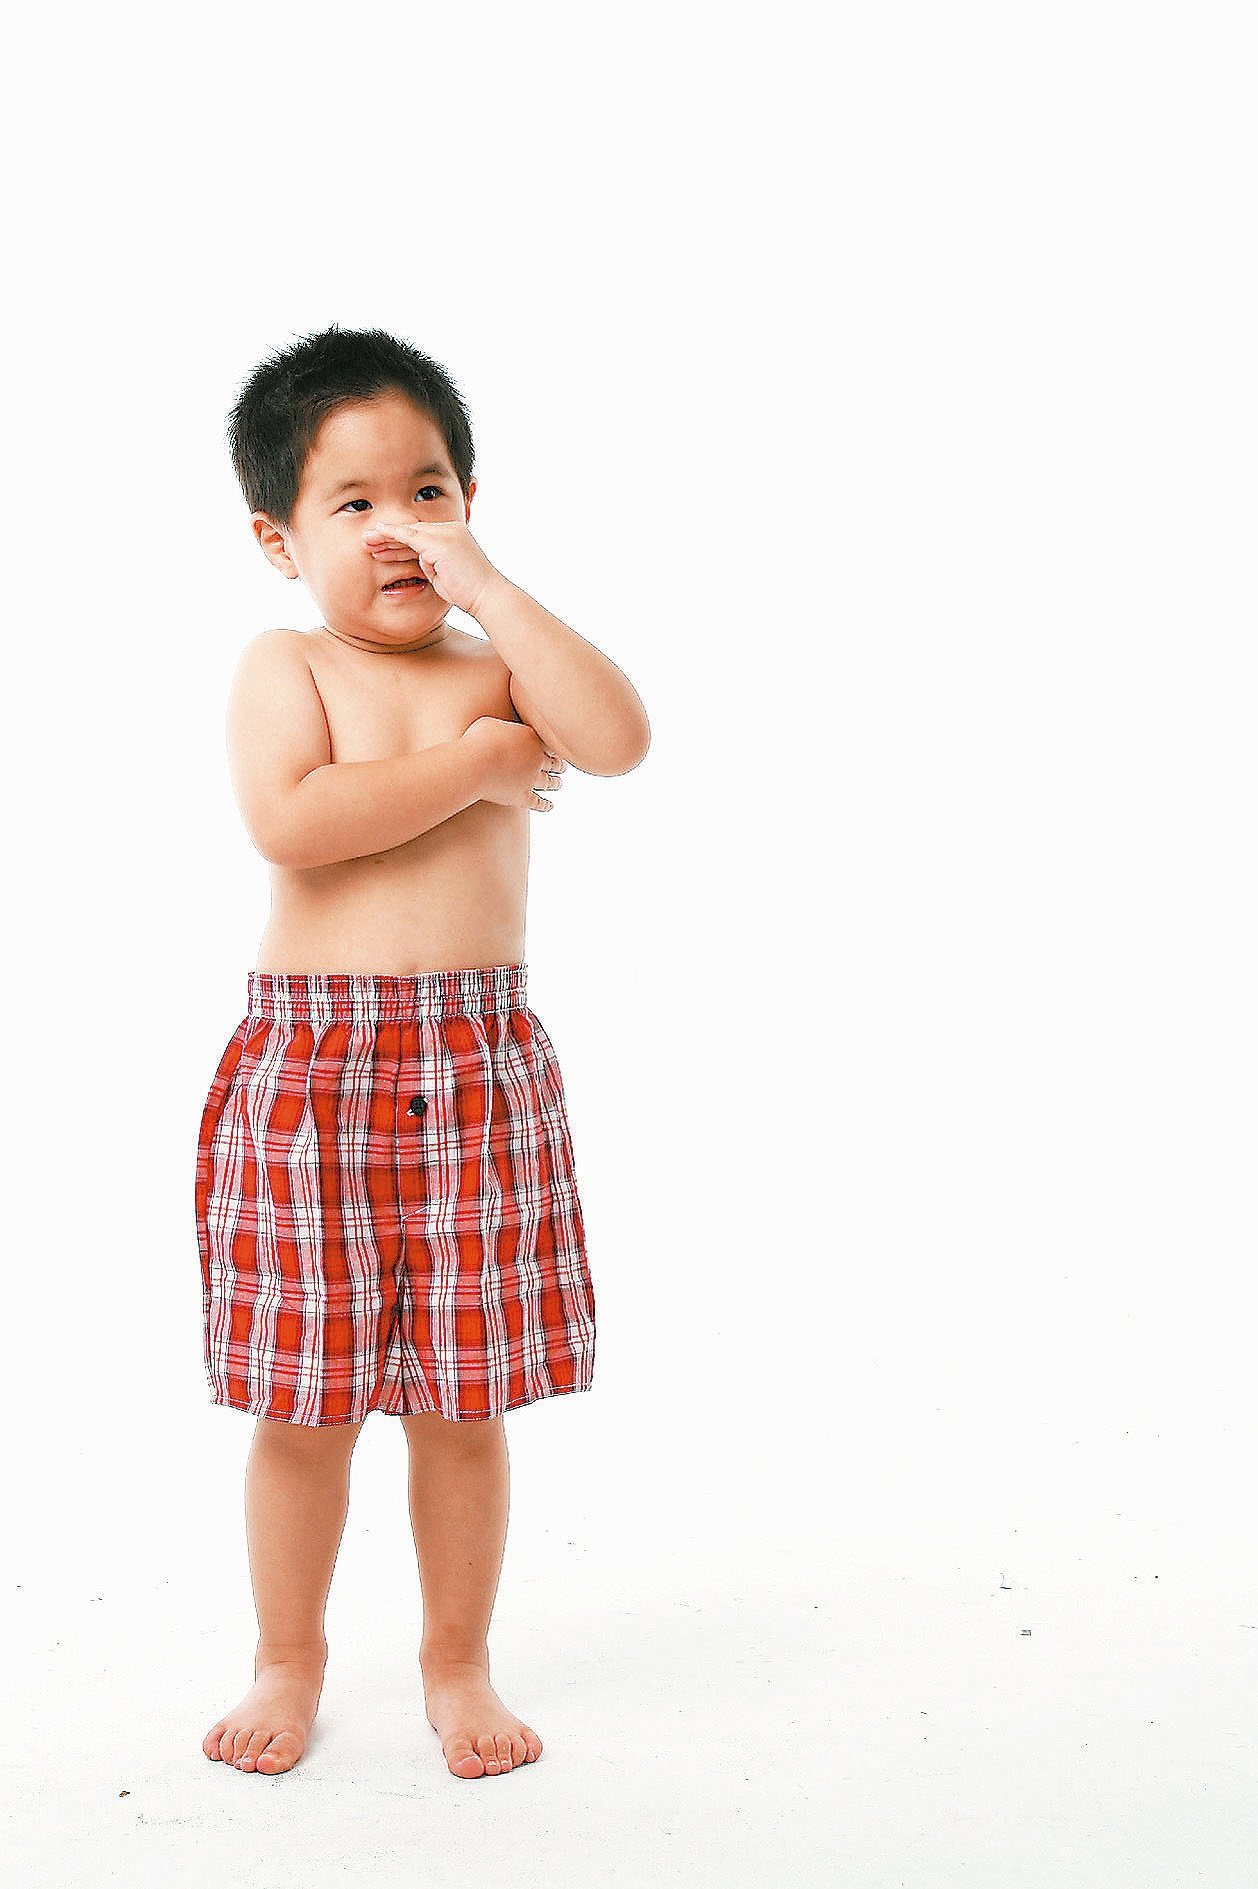 台灣兒童過敏十分普遍，以過敏性鼻炎最常見，百分之十至廿有皮膚過敏；父母也嚴陣以待。